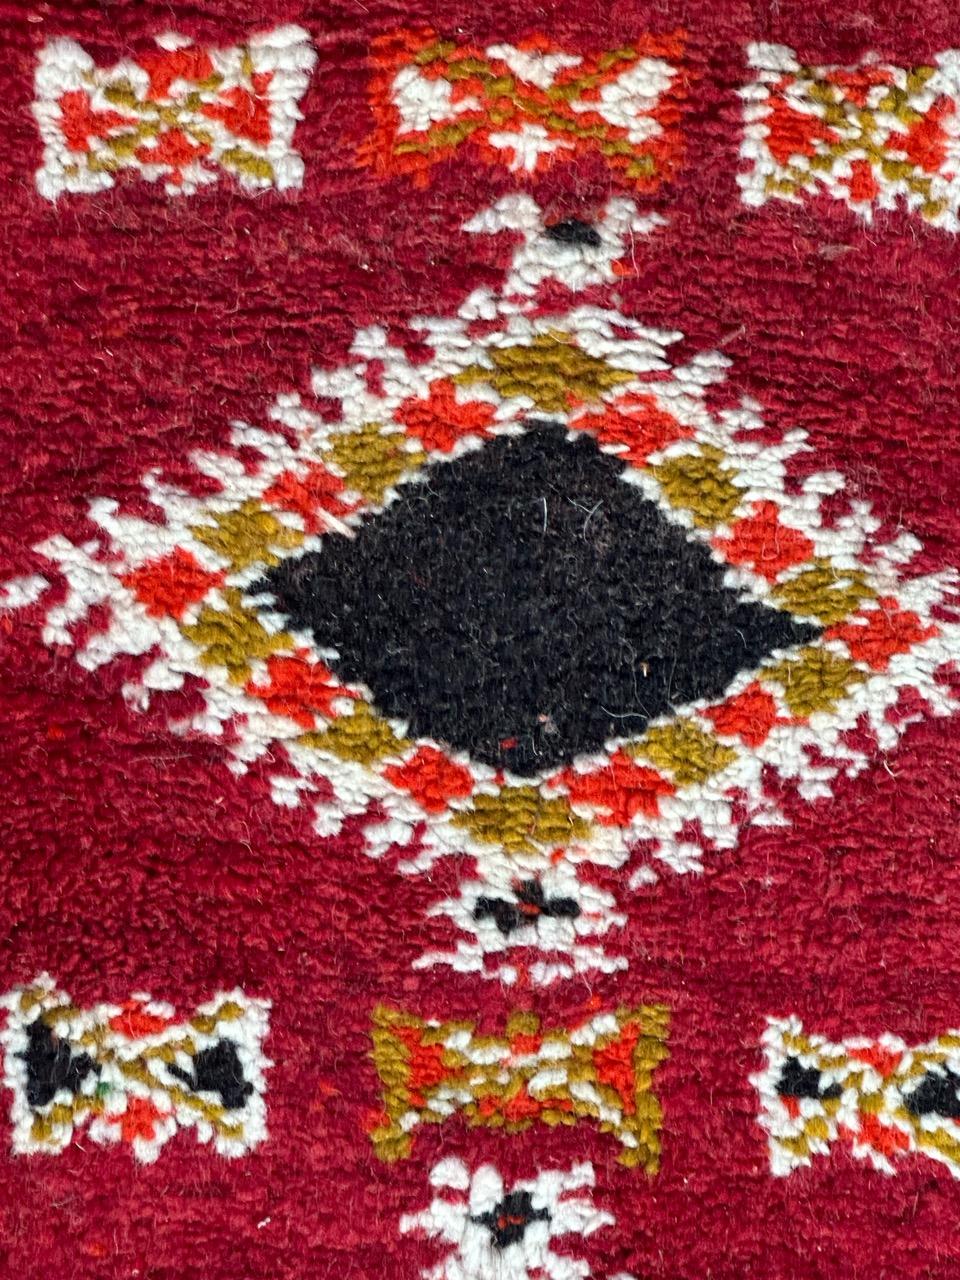 Hübscher marokkanischer Vintage-Stammesteppich mit schönem geometrischem und Stammesmuster und schönen Farben mit Rot, Orange, Gelb und Grün, komplett handgeknüpft mit Wolle auf Wollbasis.
Die Breite ist variabel zwischen 60 und 69 cm

✨✨✨
